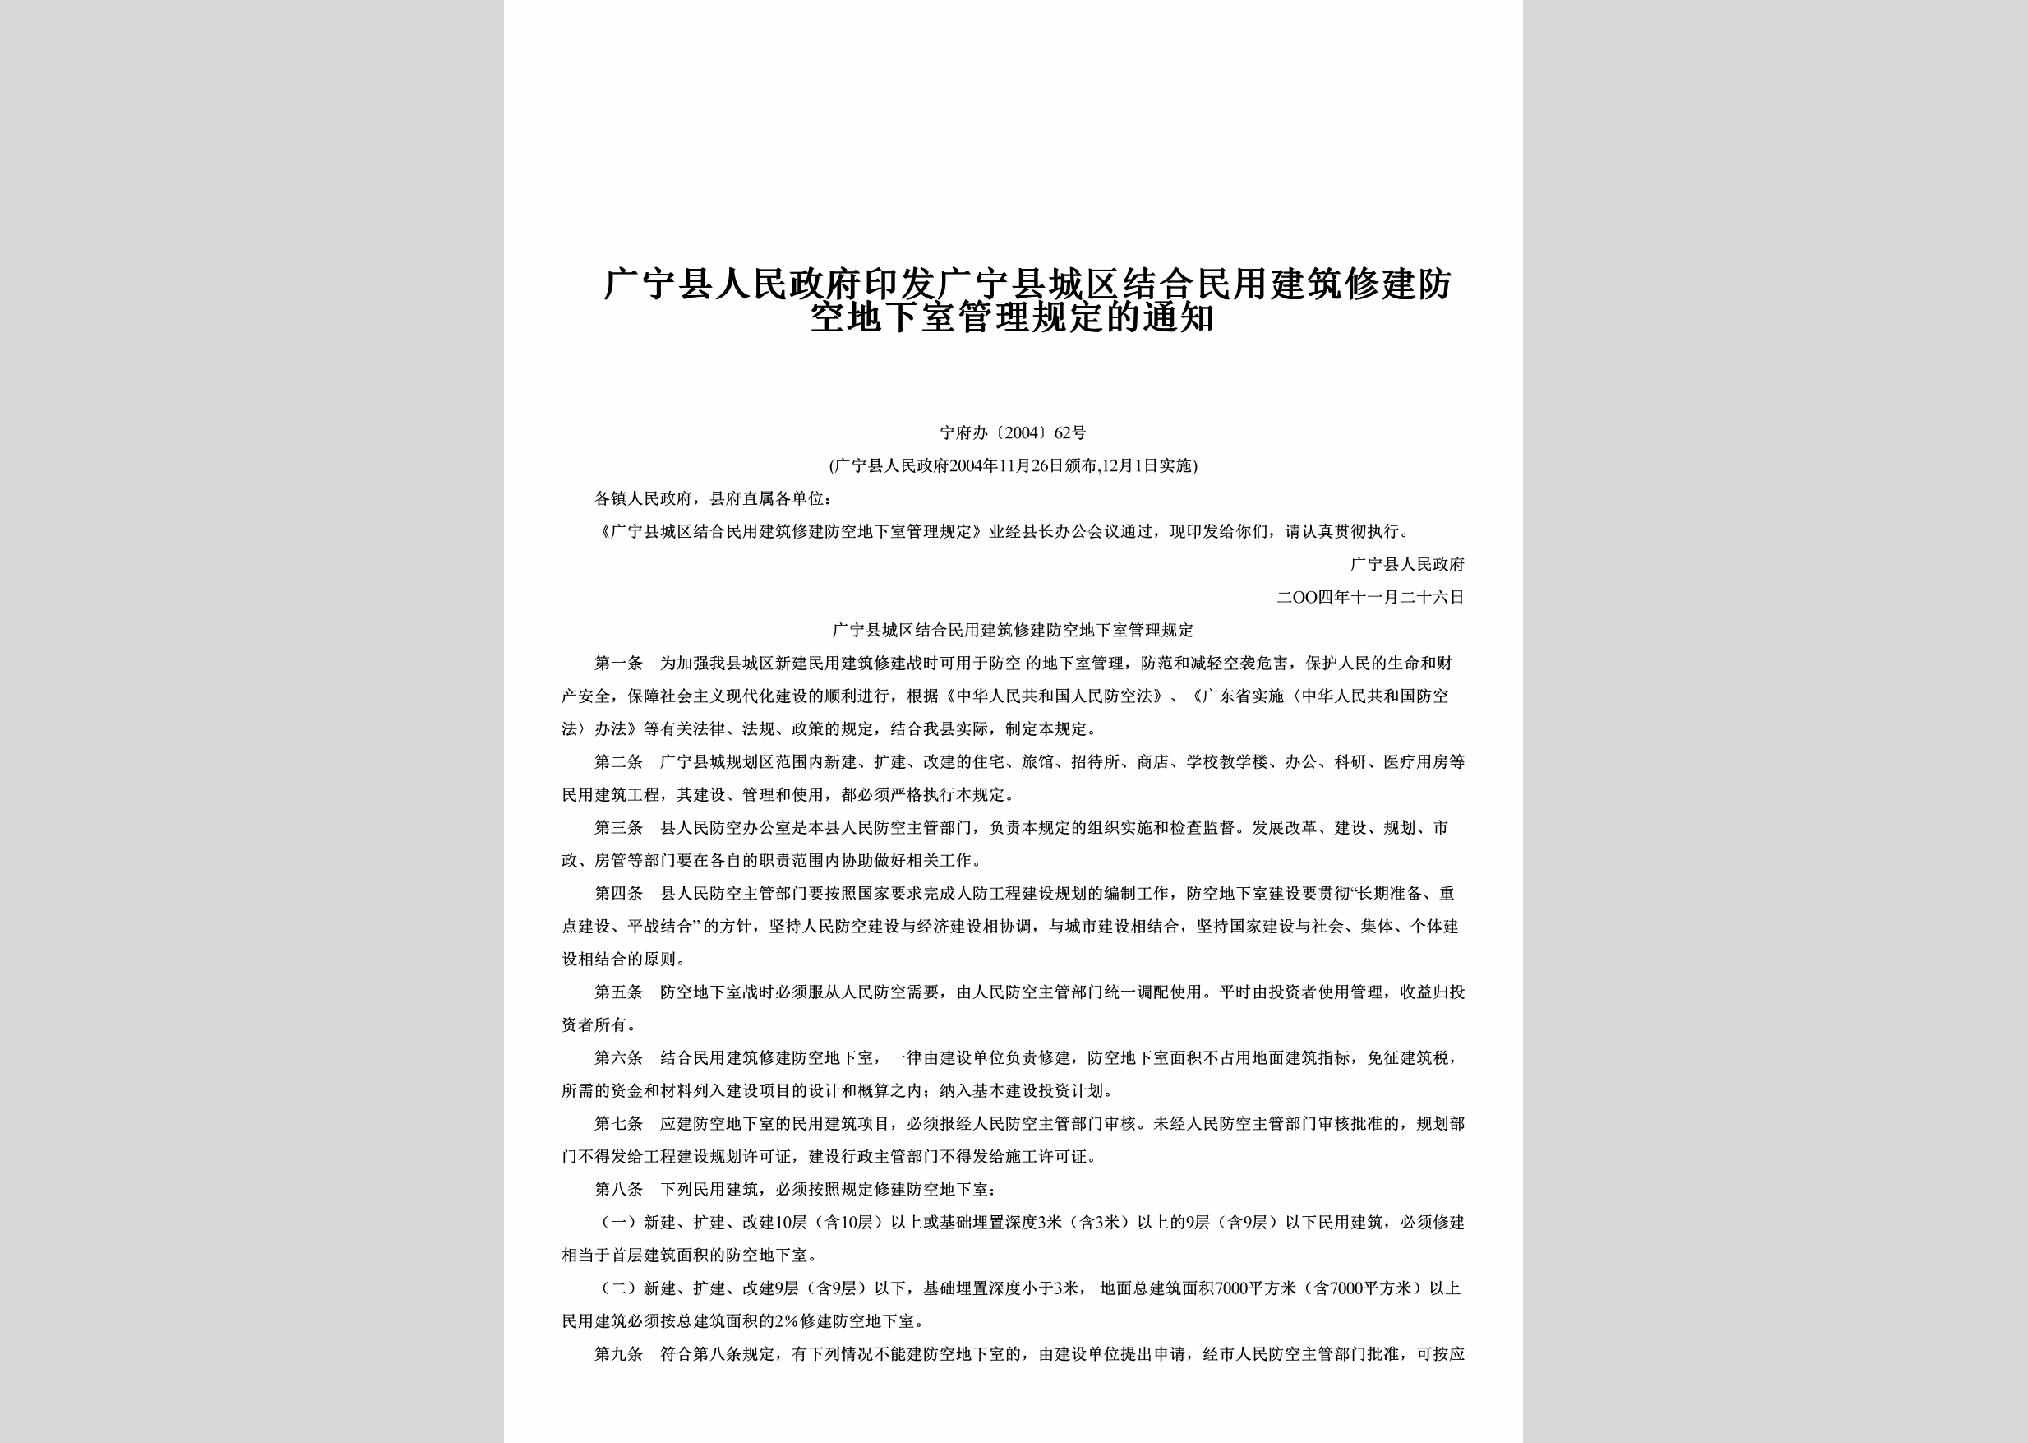 宁府办[2004]62号：印发广宁县城区结合民用建筑修建防空地下室管理规定的通知